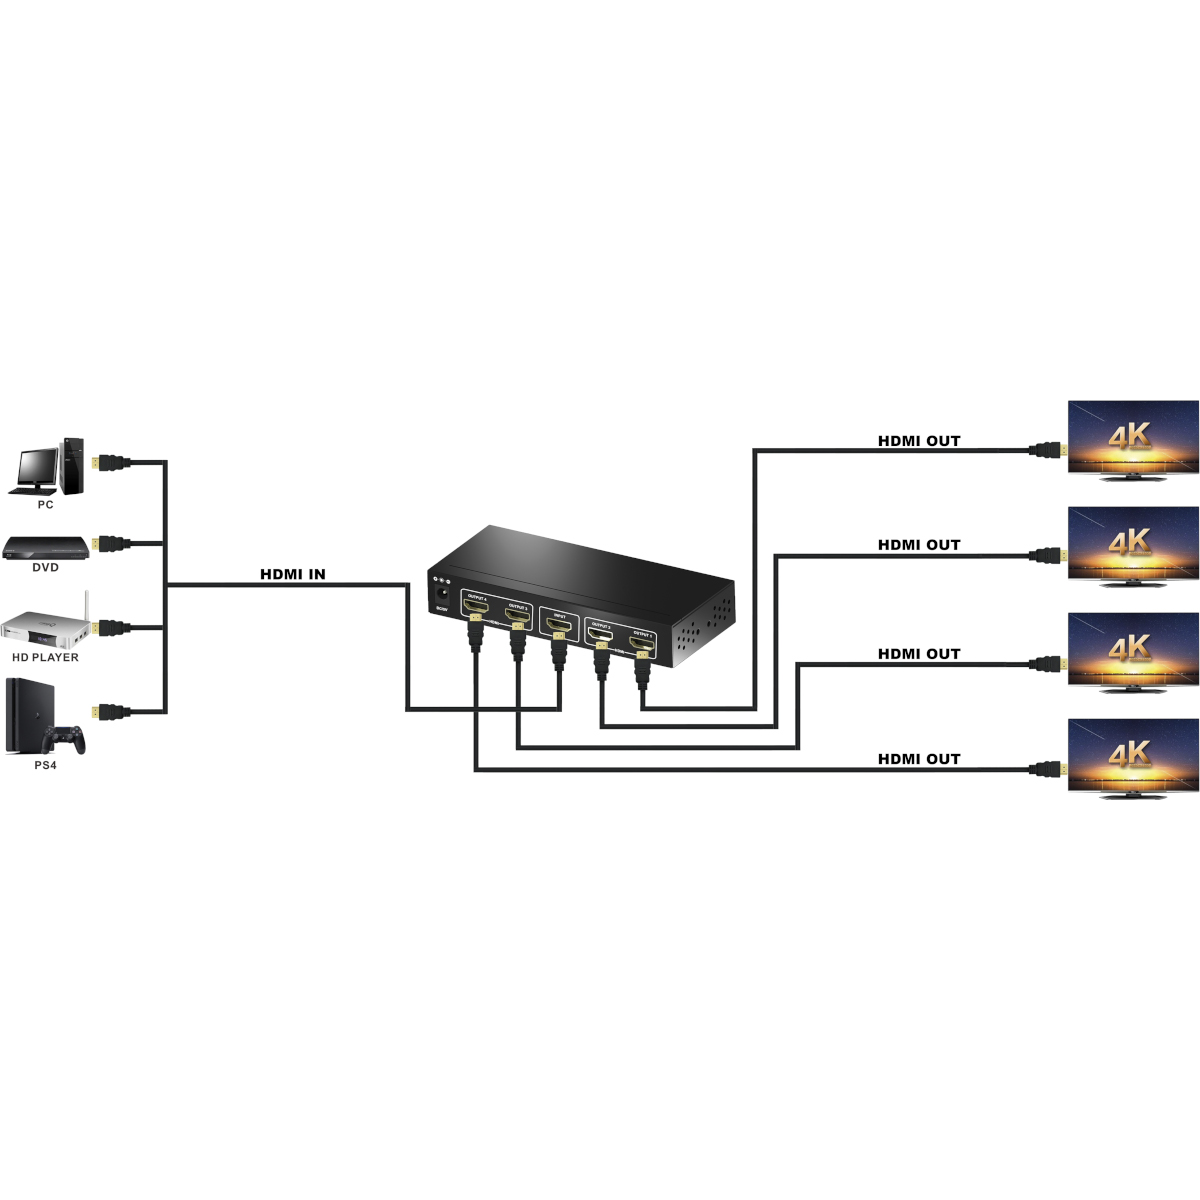 MAXTRACK Splitter Verteiler HDMI® CS25-4L 4K HDMI®